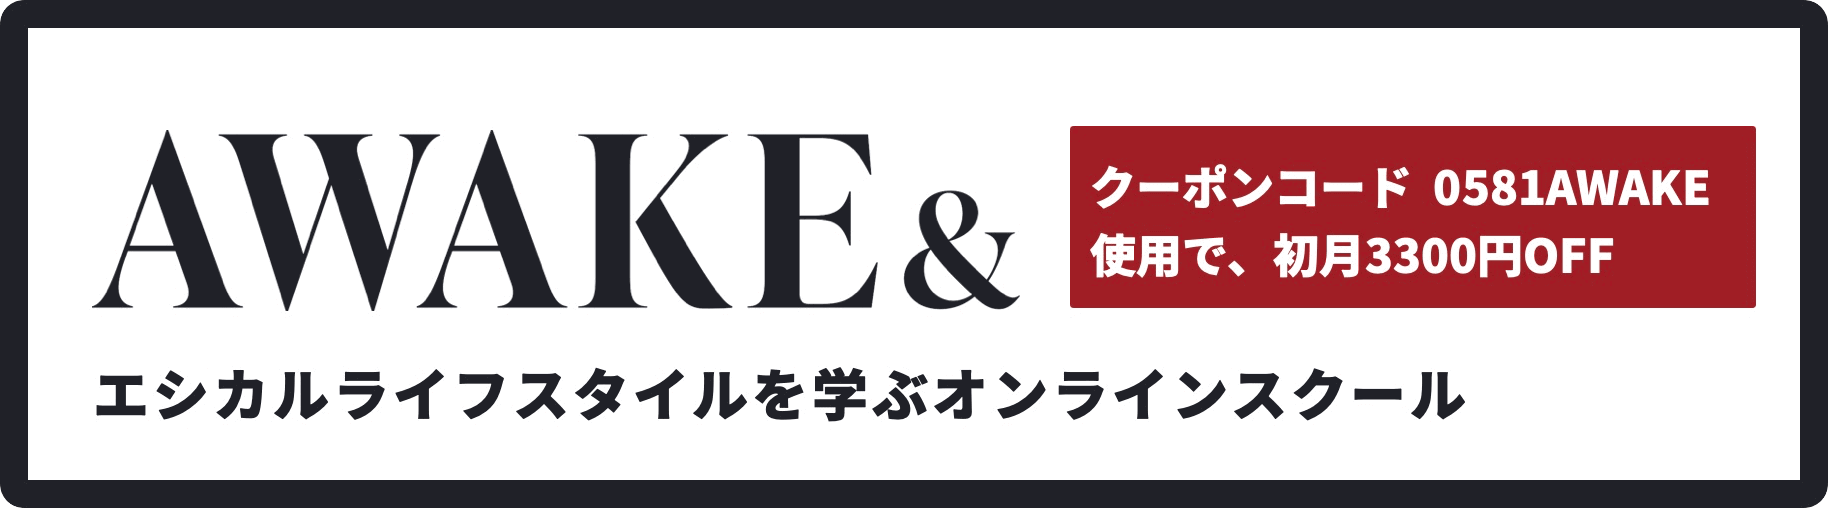 AWAKE エシカルライフスタイルを学ぶオンラインスクール 初月3,300円OFF